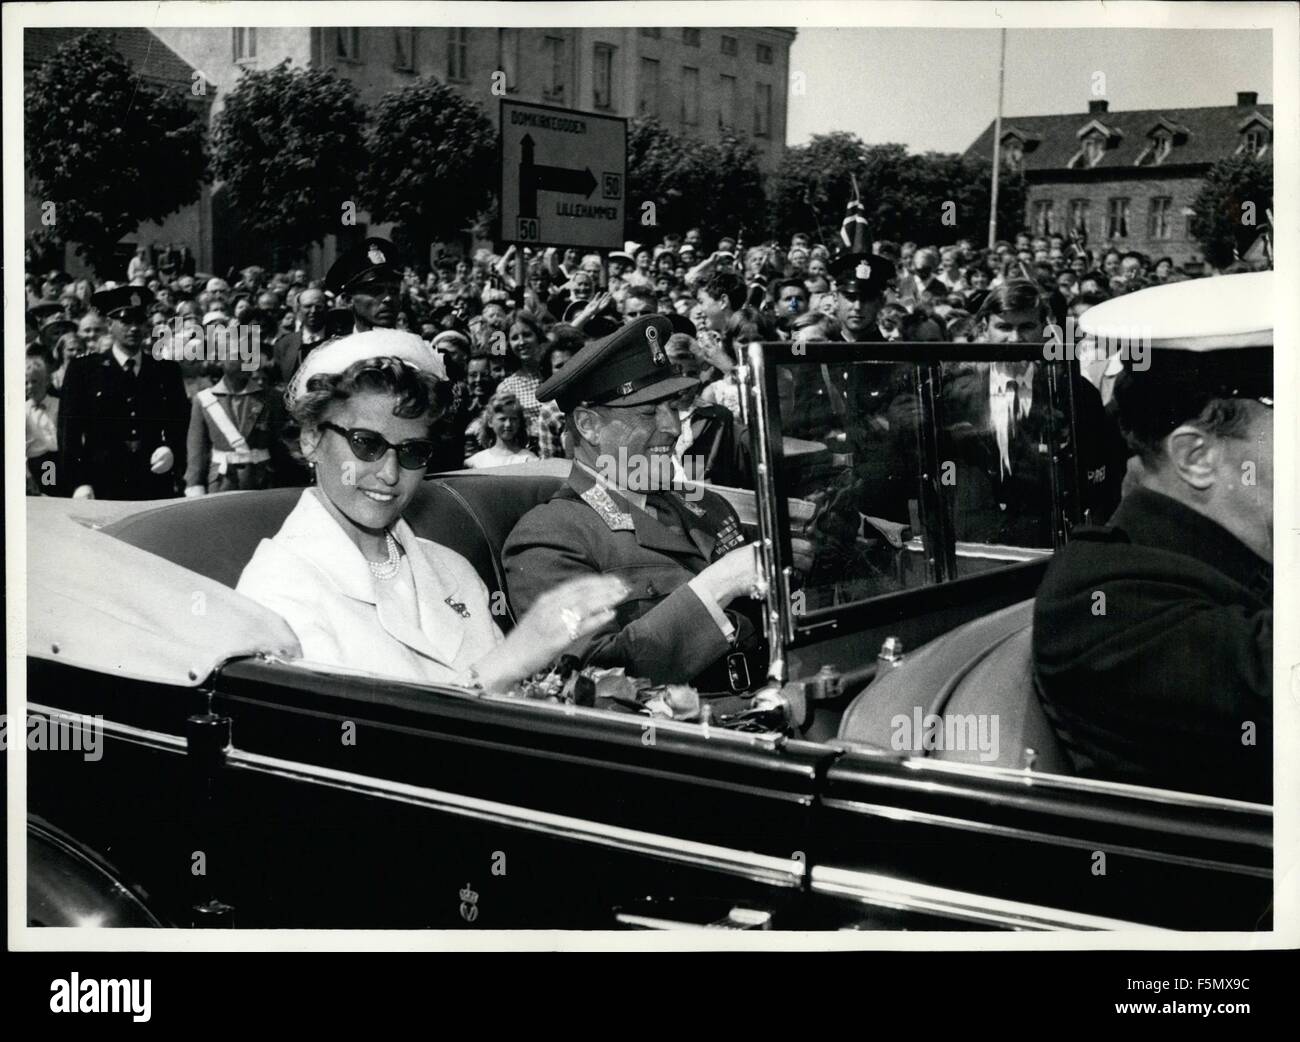 1958 - Il 16 giugno H.M. Il Re Olav V di Norvegia inizia il suo viaggio da Oslo a Trondheim, dove i vescovi della Norvegia - il 22 giugno - sarà chiamata verso il basso una benedizione su di lui in Nidarosdomen (Cattedrale di Trondheim) dove l'incoronazione del Re defunto Haakon VII ha avuto luogo il 22 giugno 1966. H.M Re Olav V ha lasciato la sua residenza, Skaugum vicino a Oslo, insieme con la sua figlia S.A.R. La principessa Astrid nella mattinata del 16 giugno per iniziare il suo viaggio in tutta la Norvegia meridionale. Il re è la guida in un aperto cabriolet e la Royal corteo conta 5 auto mentre si stampa, radio, TV, ecc sono fol Foto Stock